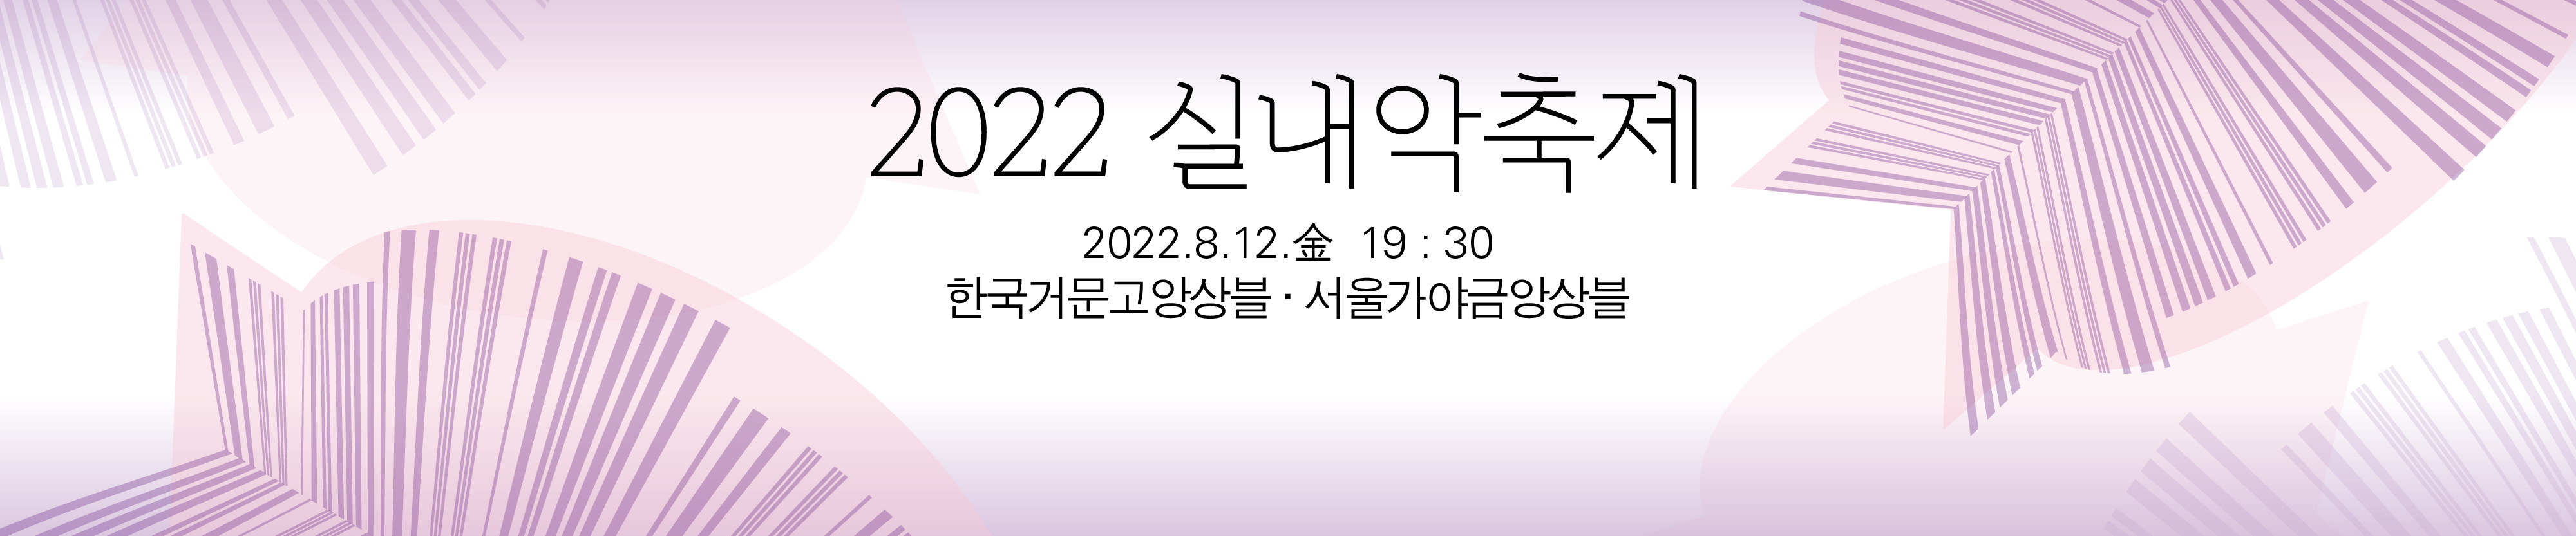 2022 실내악축제-한국거문고앙상블·서울가야금앙상블